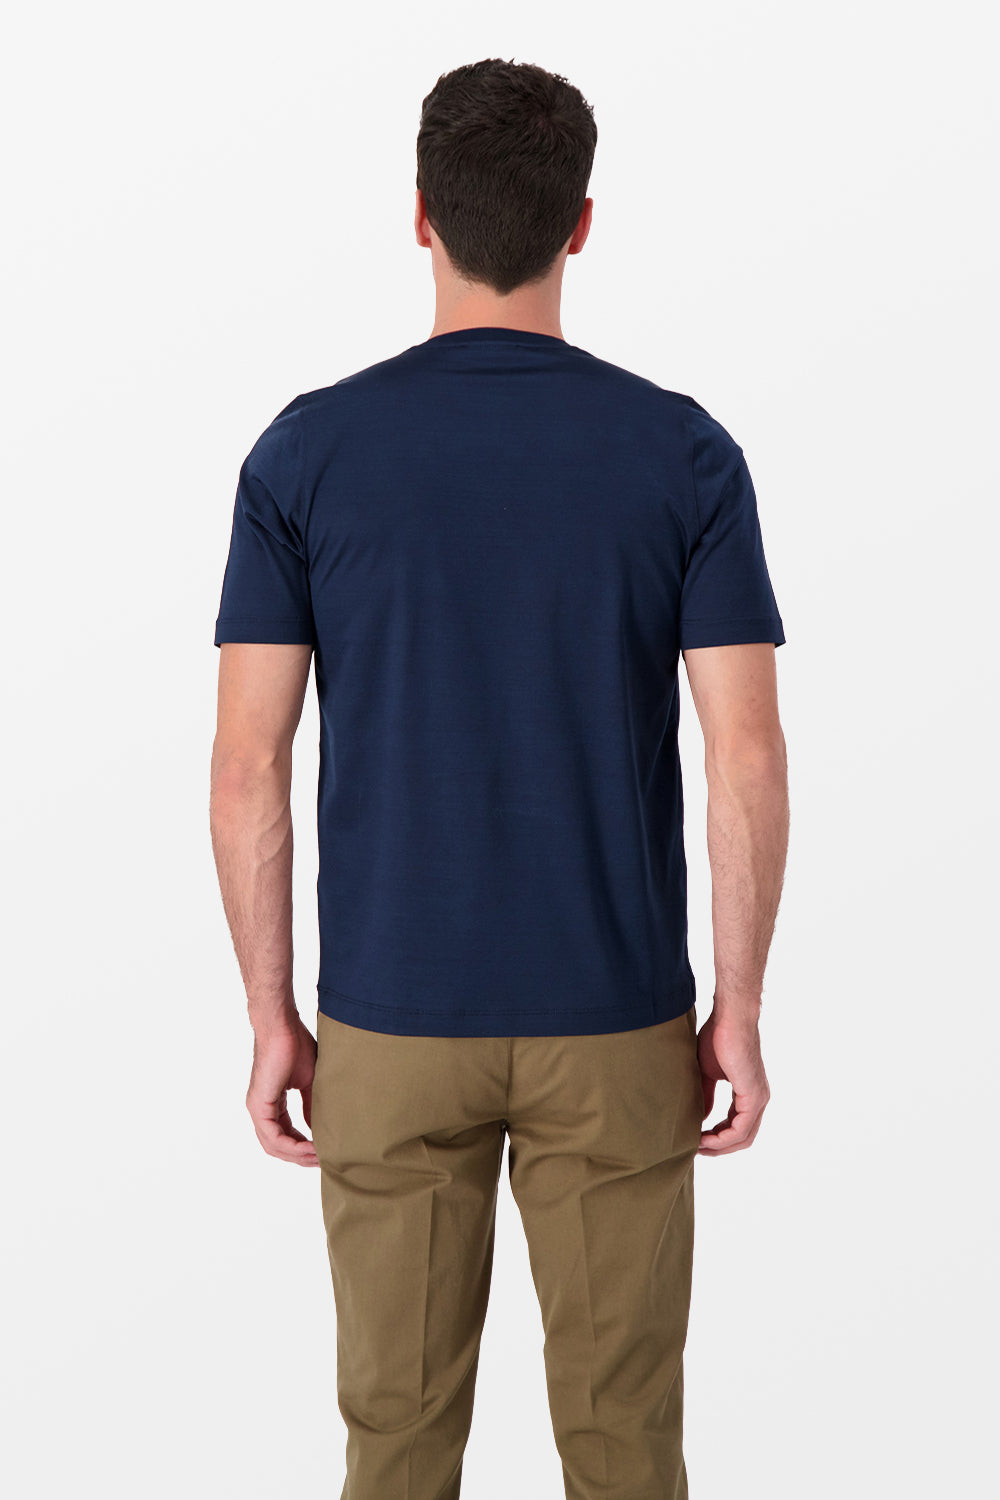 Zilli Navy Lion T-Shirt